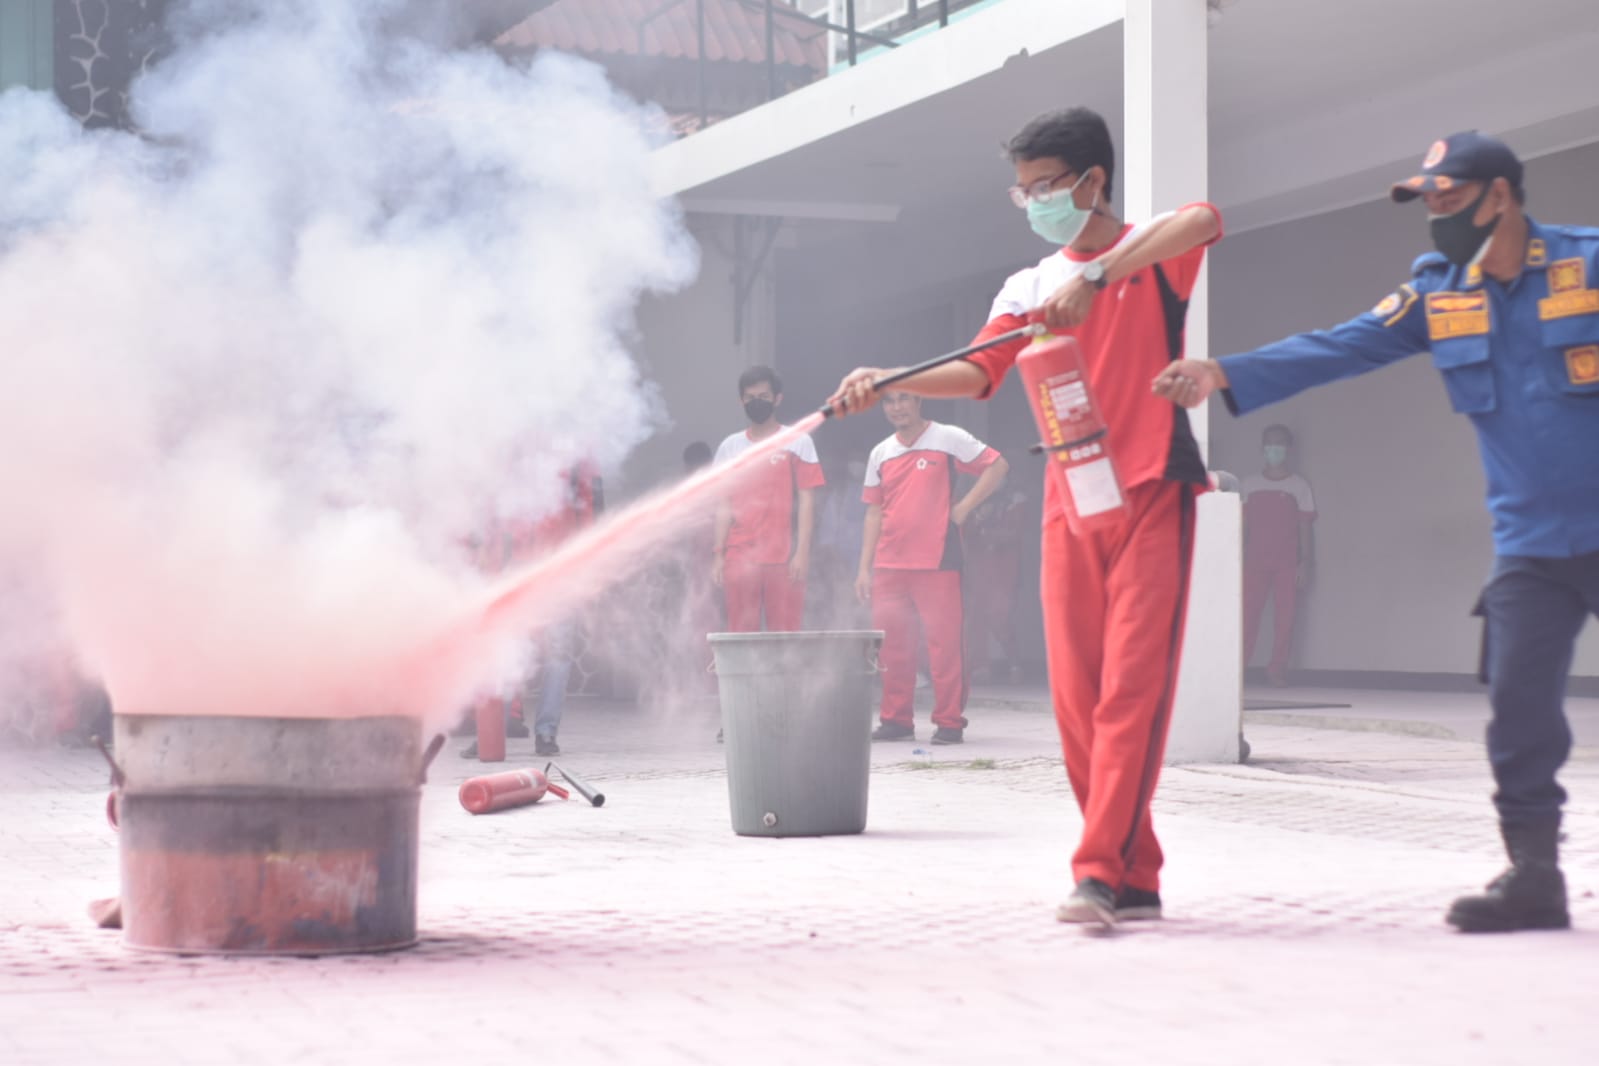 Palang Merah Indonesia Kota Tangerang bekerja sama dengan Badan Penanggulangan Bencana Daerah Kota Tangerang melakukan pelatihan dan simulasi kebakaran di lingkungan kerja di aula Gedung Laboratorium PMI Kota Tangerang, Jumat 12 November 2021.